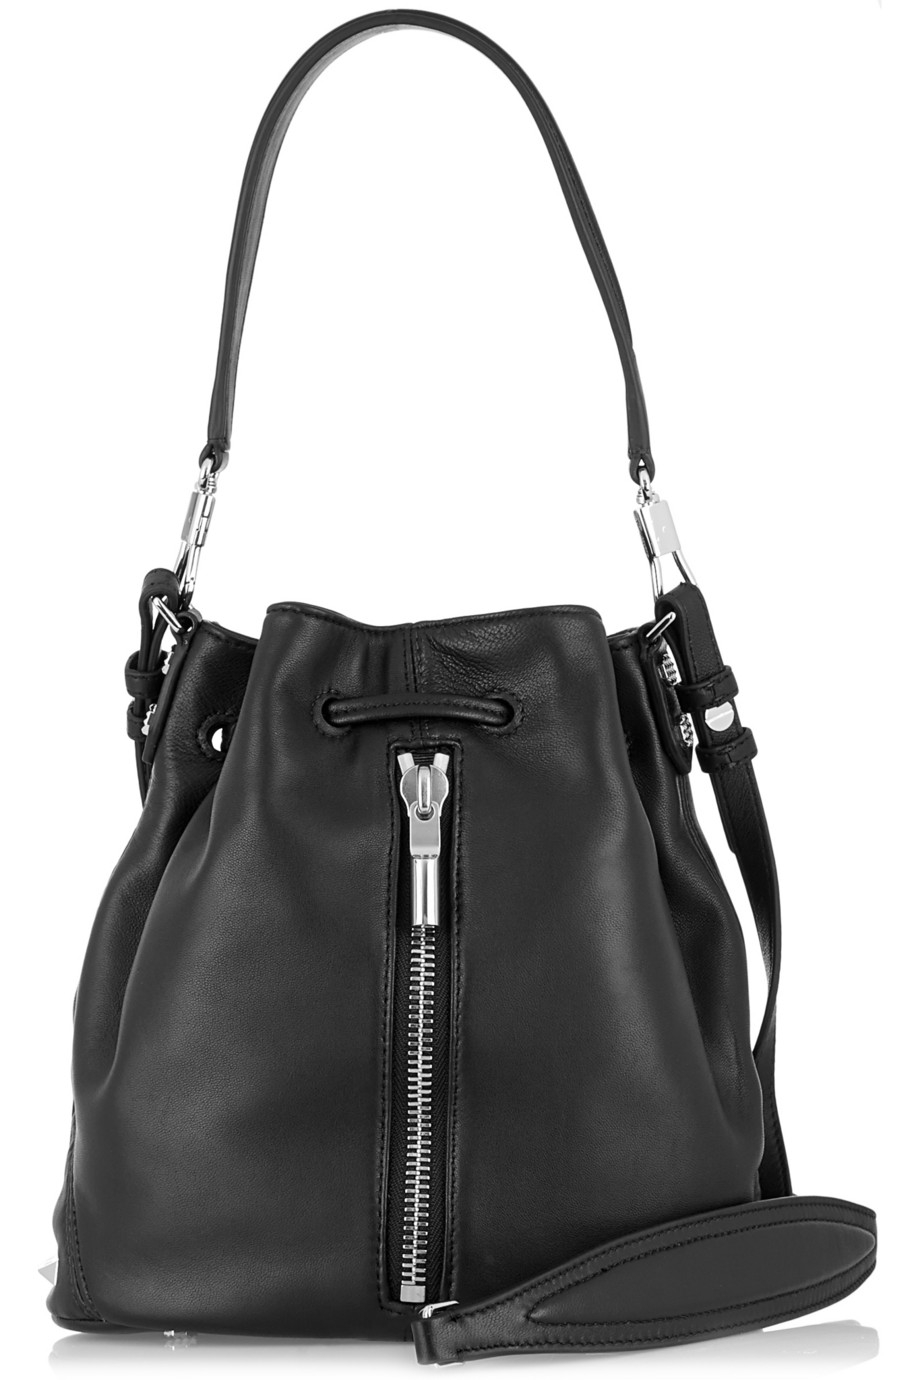 Lyst - Elizabeth And James Cynnie Mini Leather Shoulder Bag in Black